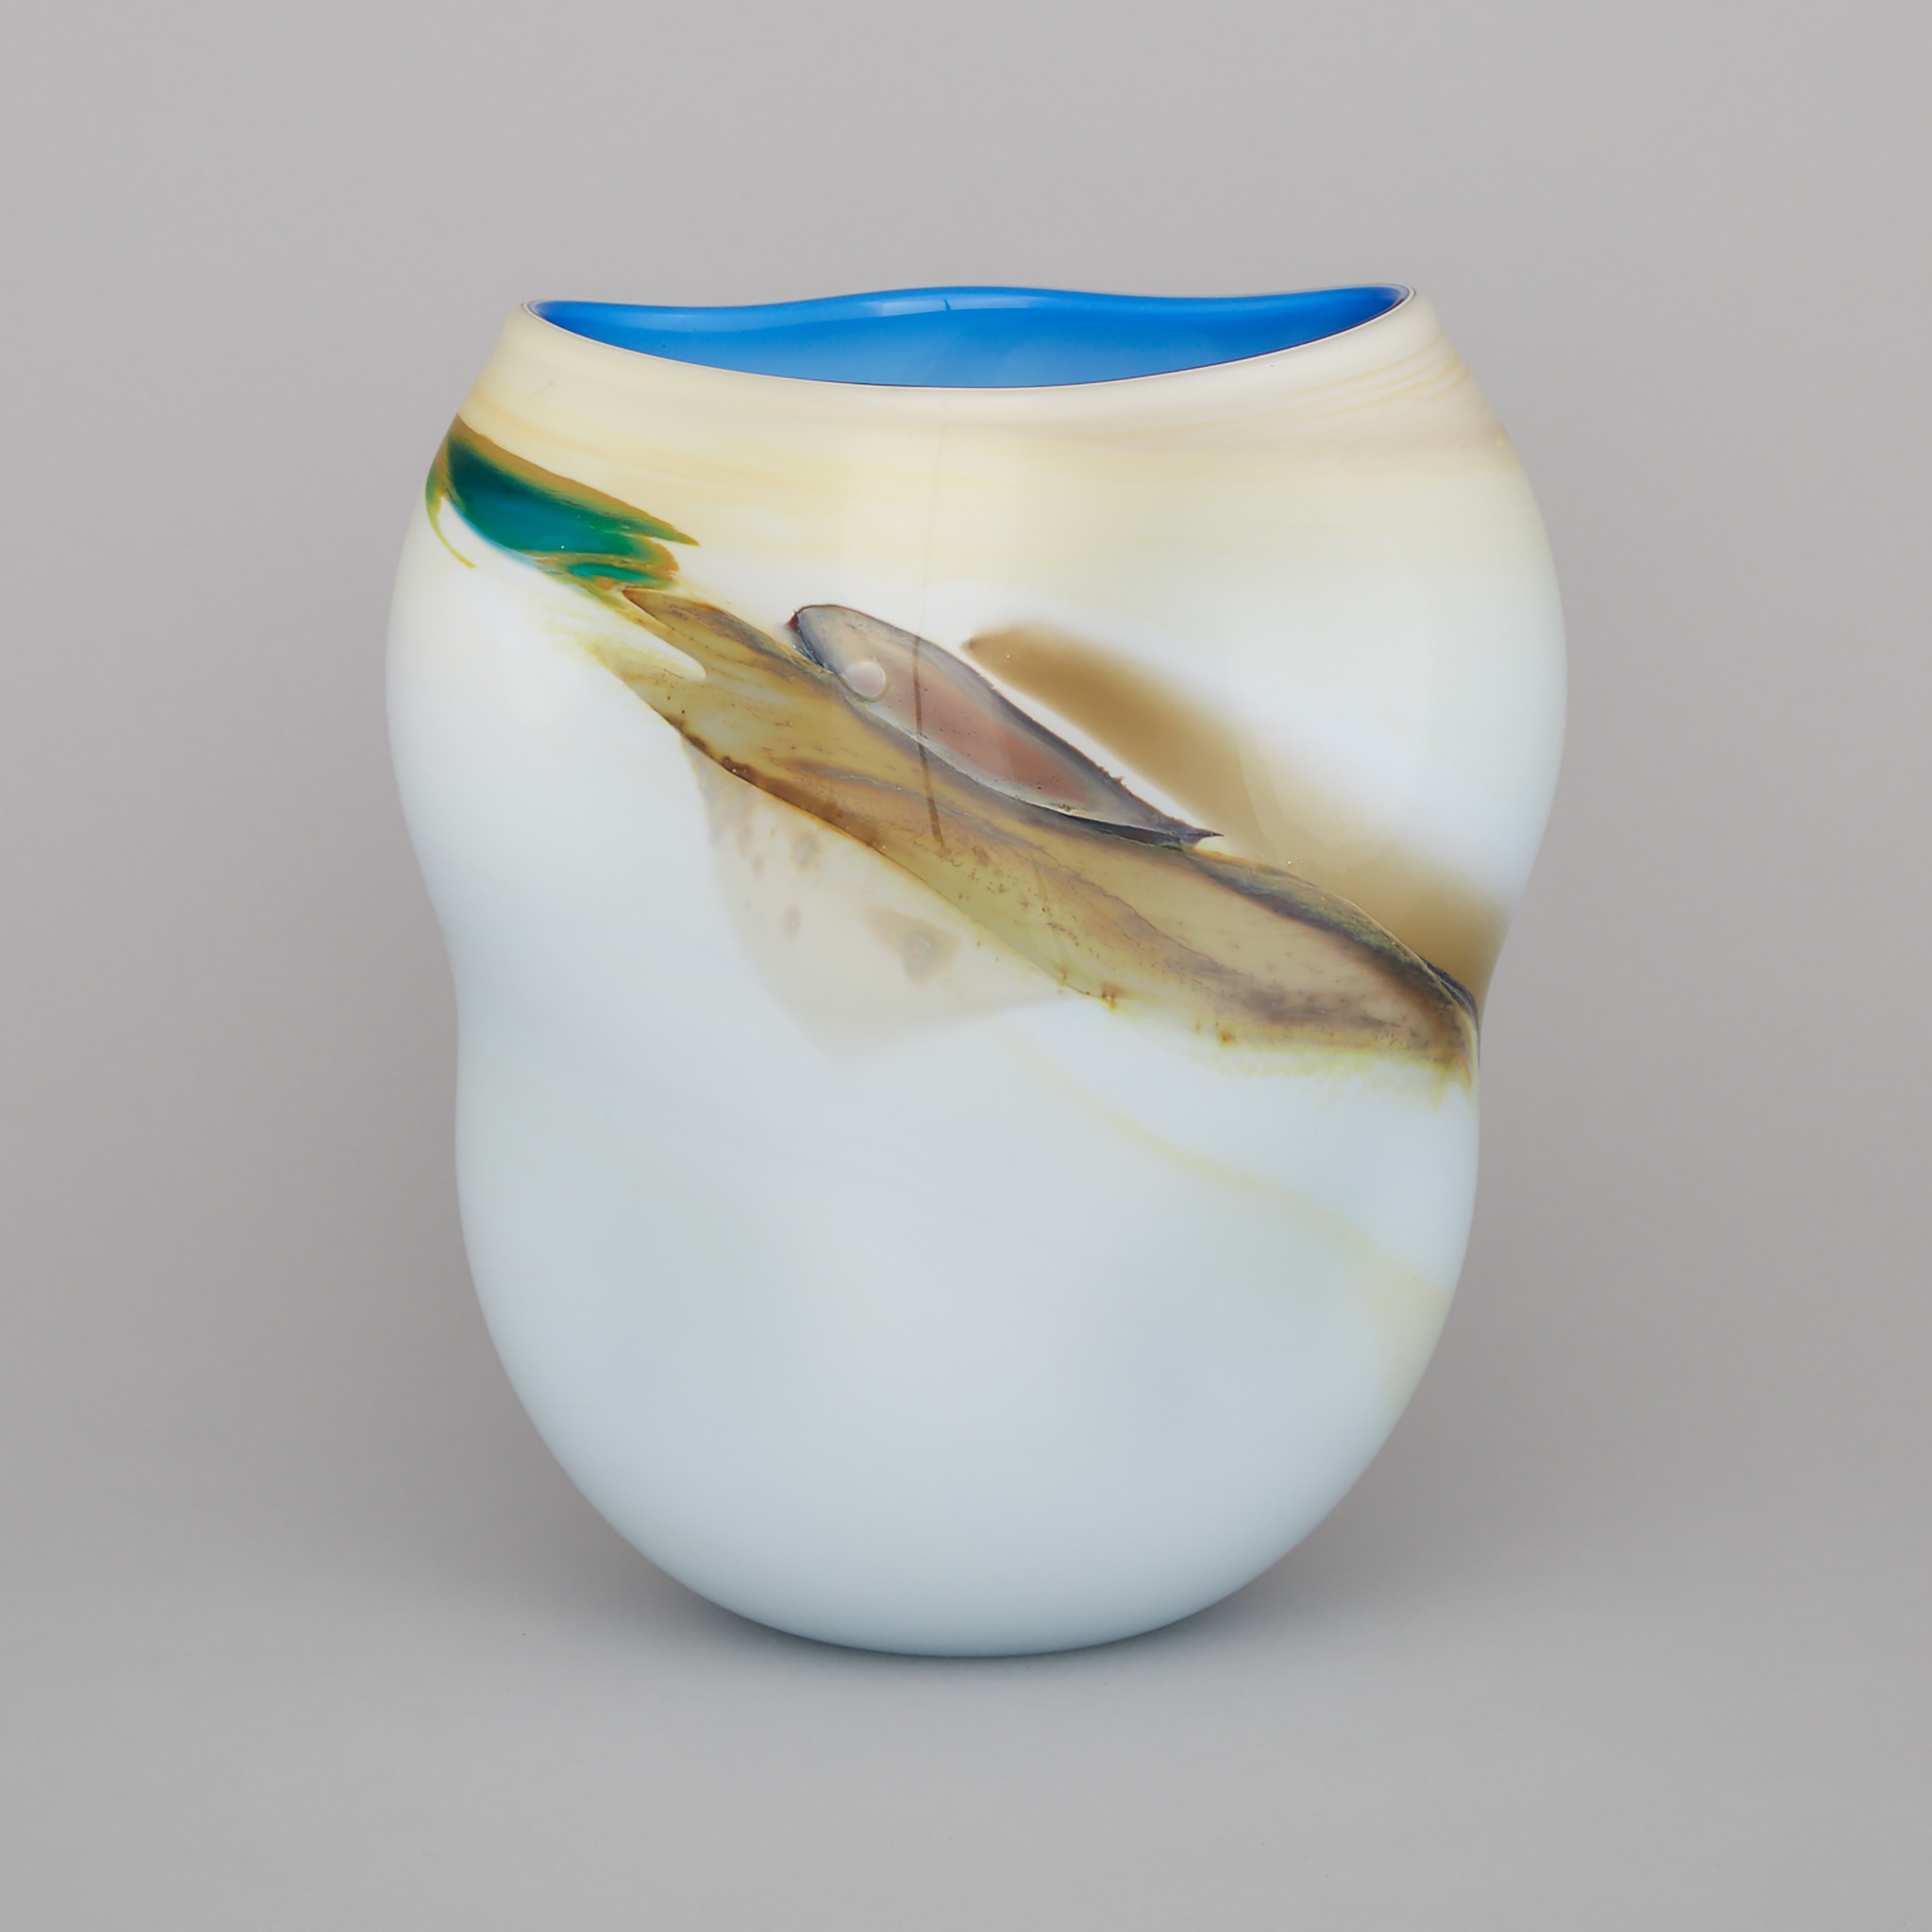 Studio Glass Vase, 20th century